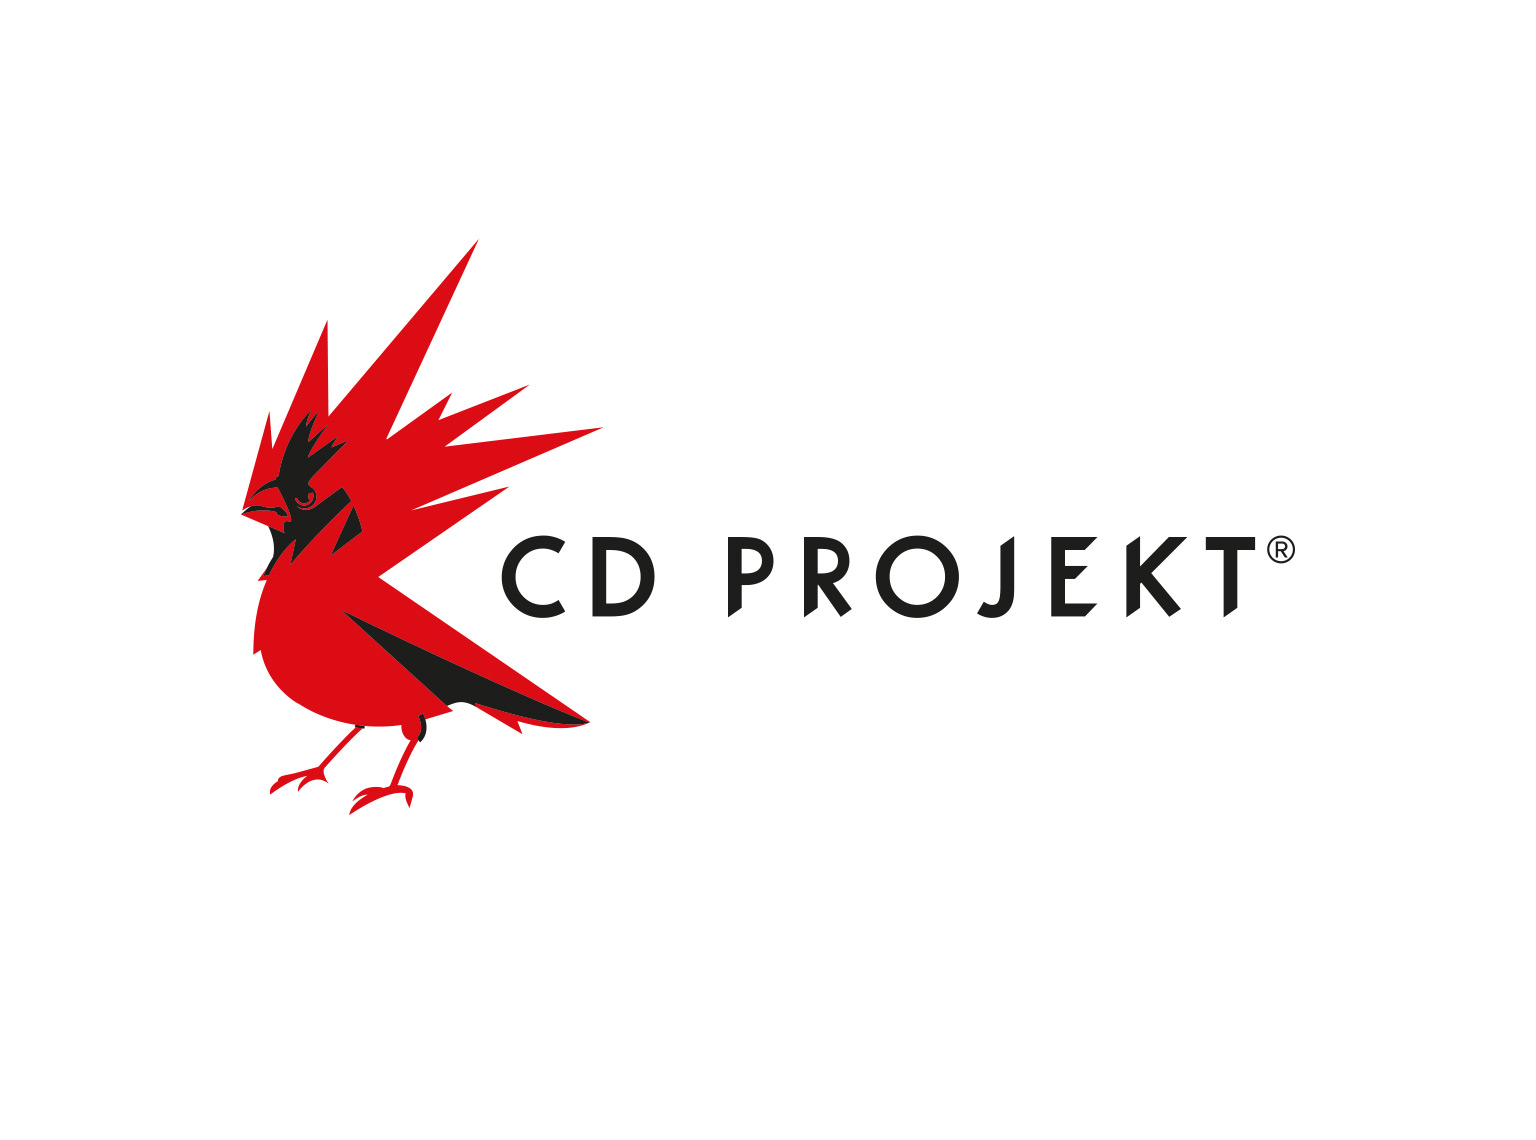 Panie, co za czasy, CD Projekt jest wart na giedzie wicej ni PKN Orlen